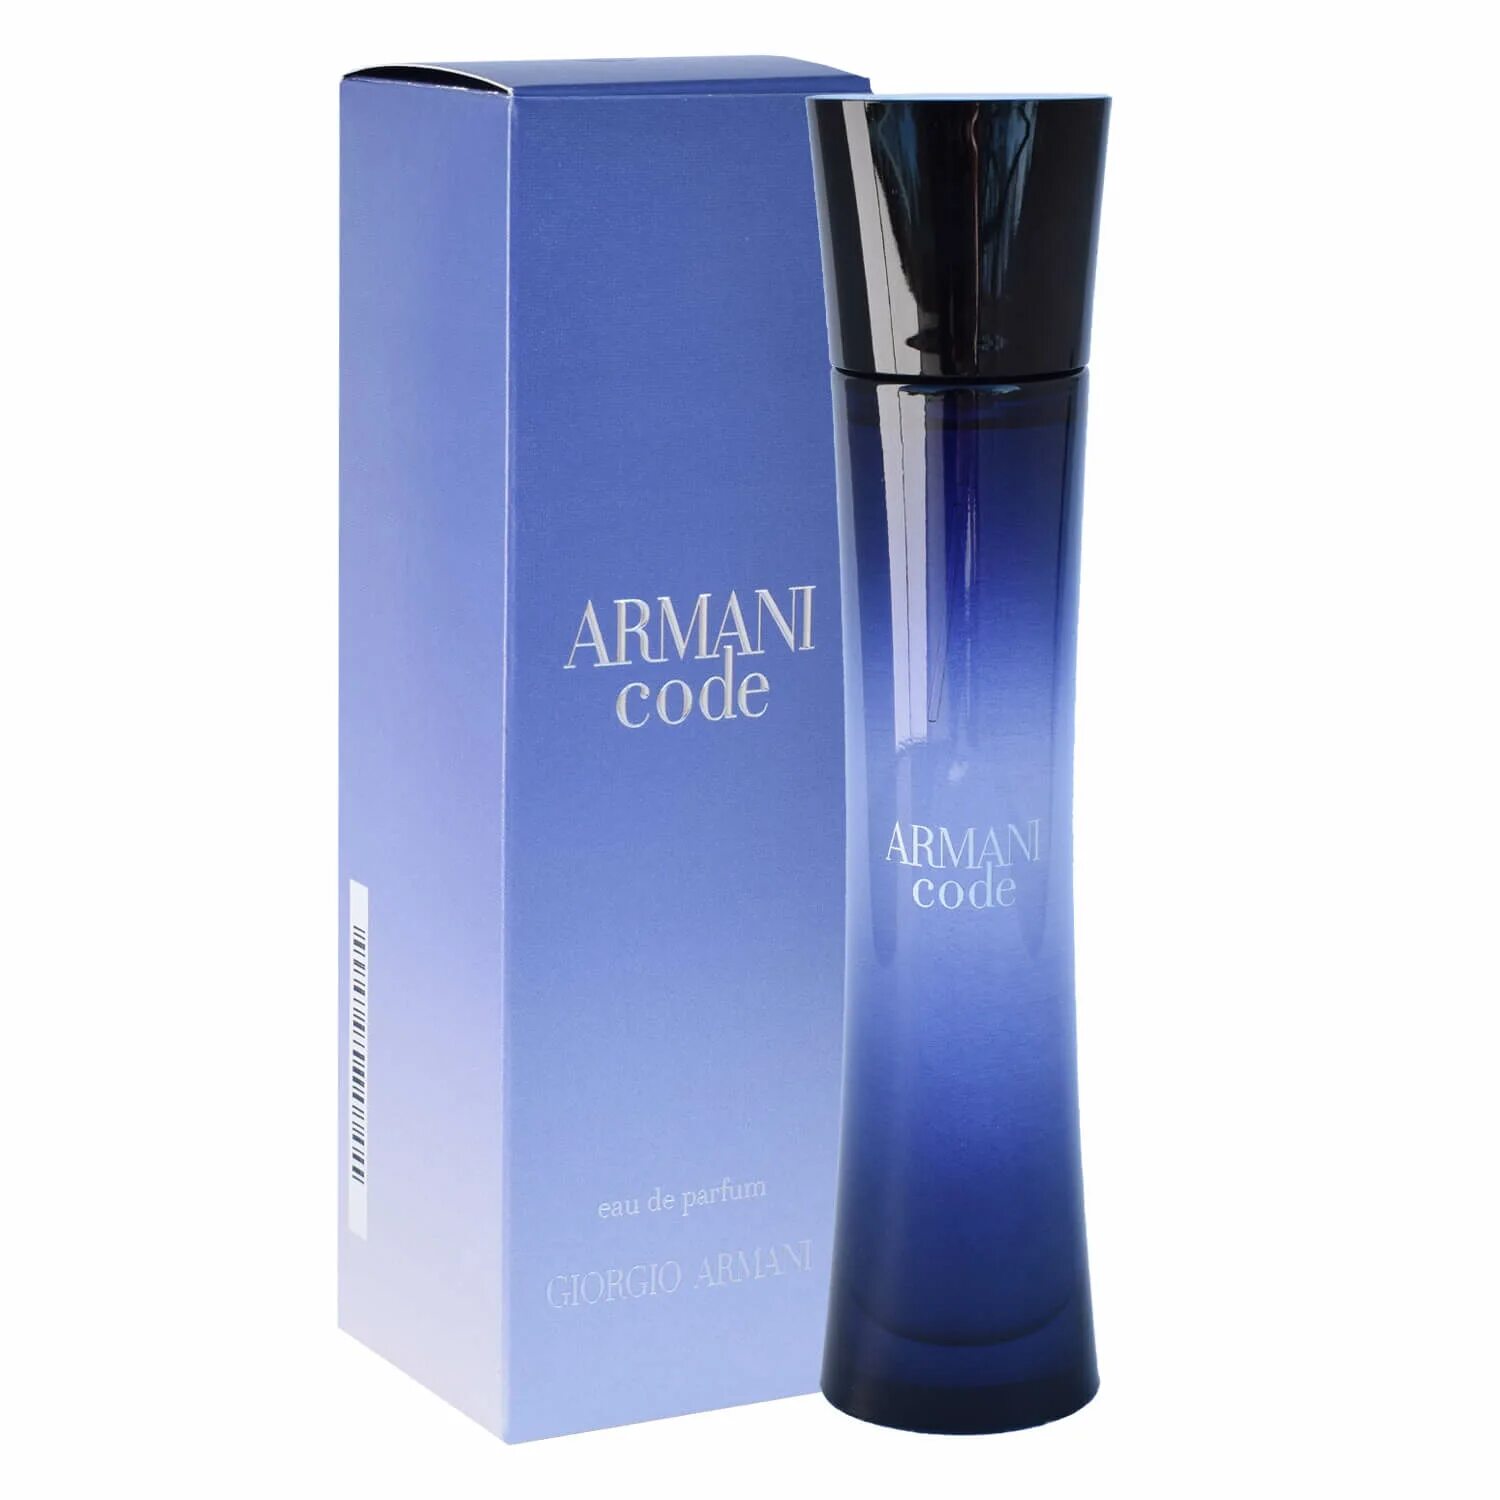 Купить армани вода. Giorgio Armani Armani code Parfum, 75 ml. Giorgio Armani code femme. Giorgio Armani code femme 30ml. Giorgio Armani Armani code Satin w 75ml Luxe.